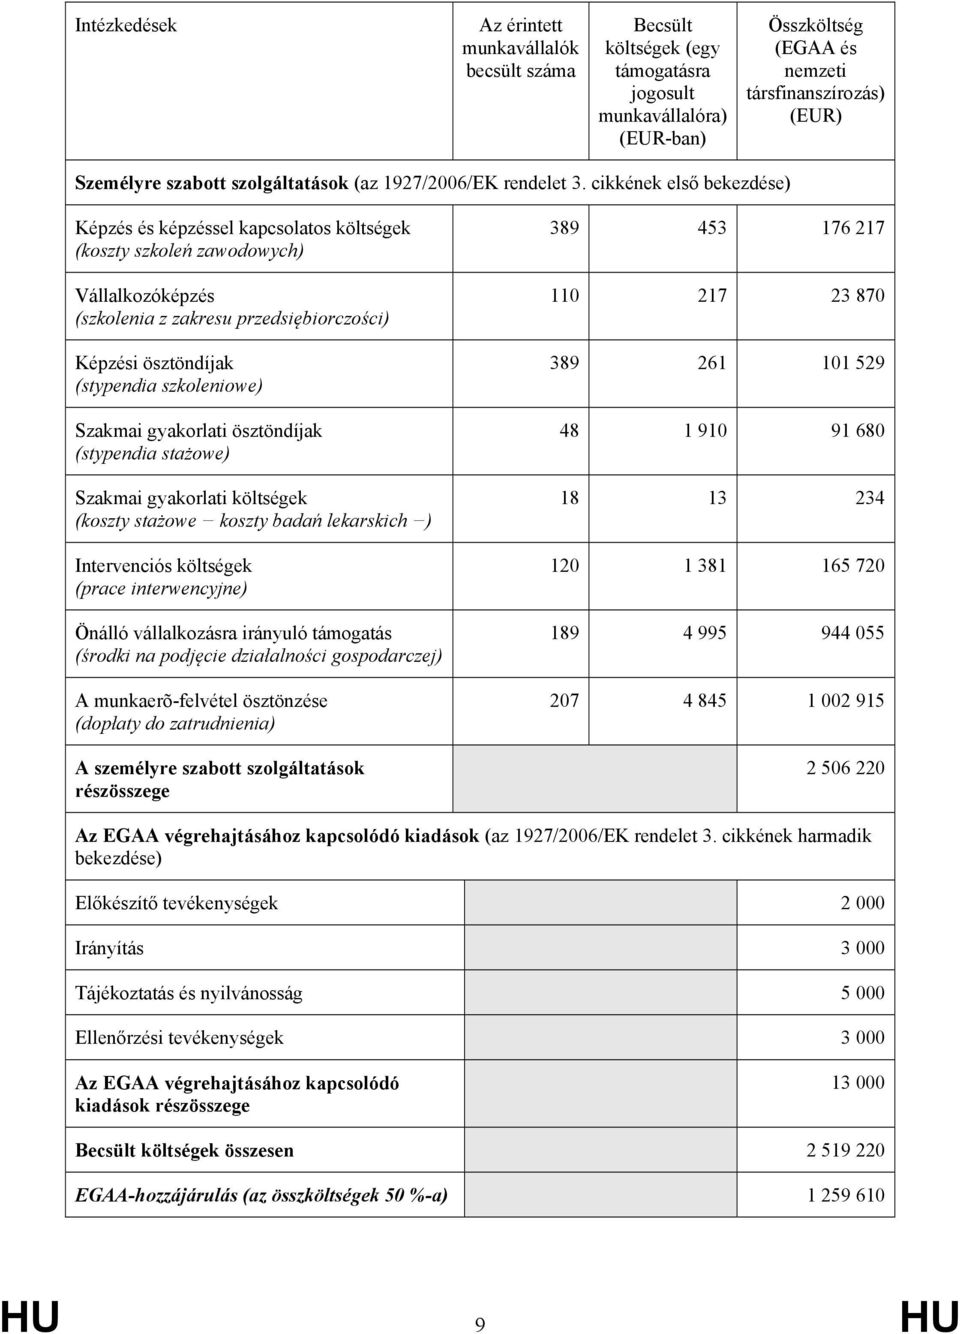 cikkének első bekezdése) Képzés és képzéssel kapcsolatos költségek (koszty szkoleń zawodowych) Vállalkozóképzés (szkolenia z zakresu przedsiębiorczości) Képzési ösztöndíjak (stypendia szkoleniowe)